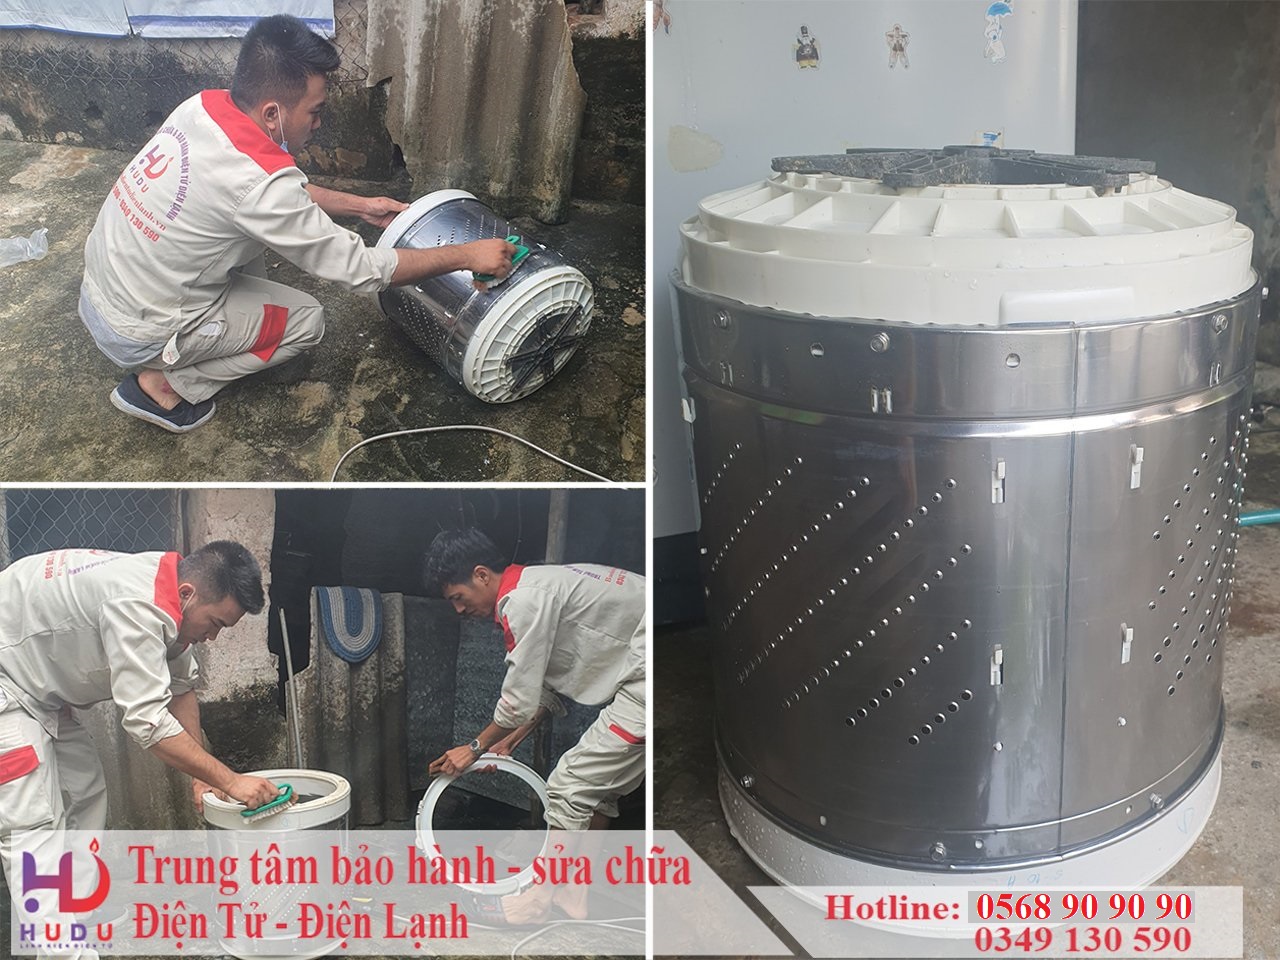 Dịch vụ vệ sinh máy giặt tại nhà giá rẻ của Hudu